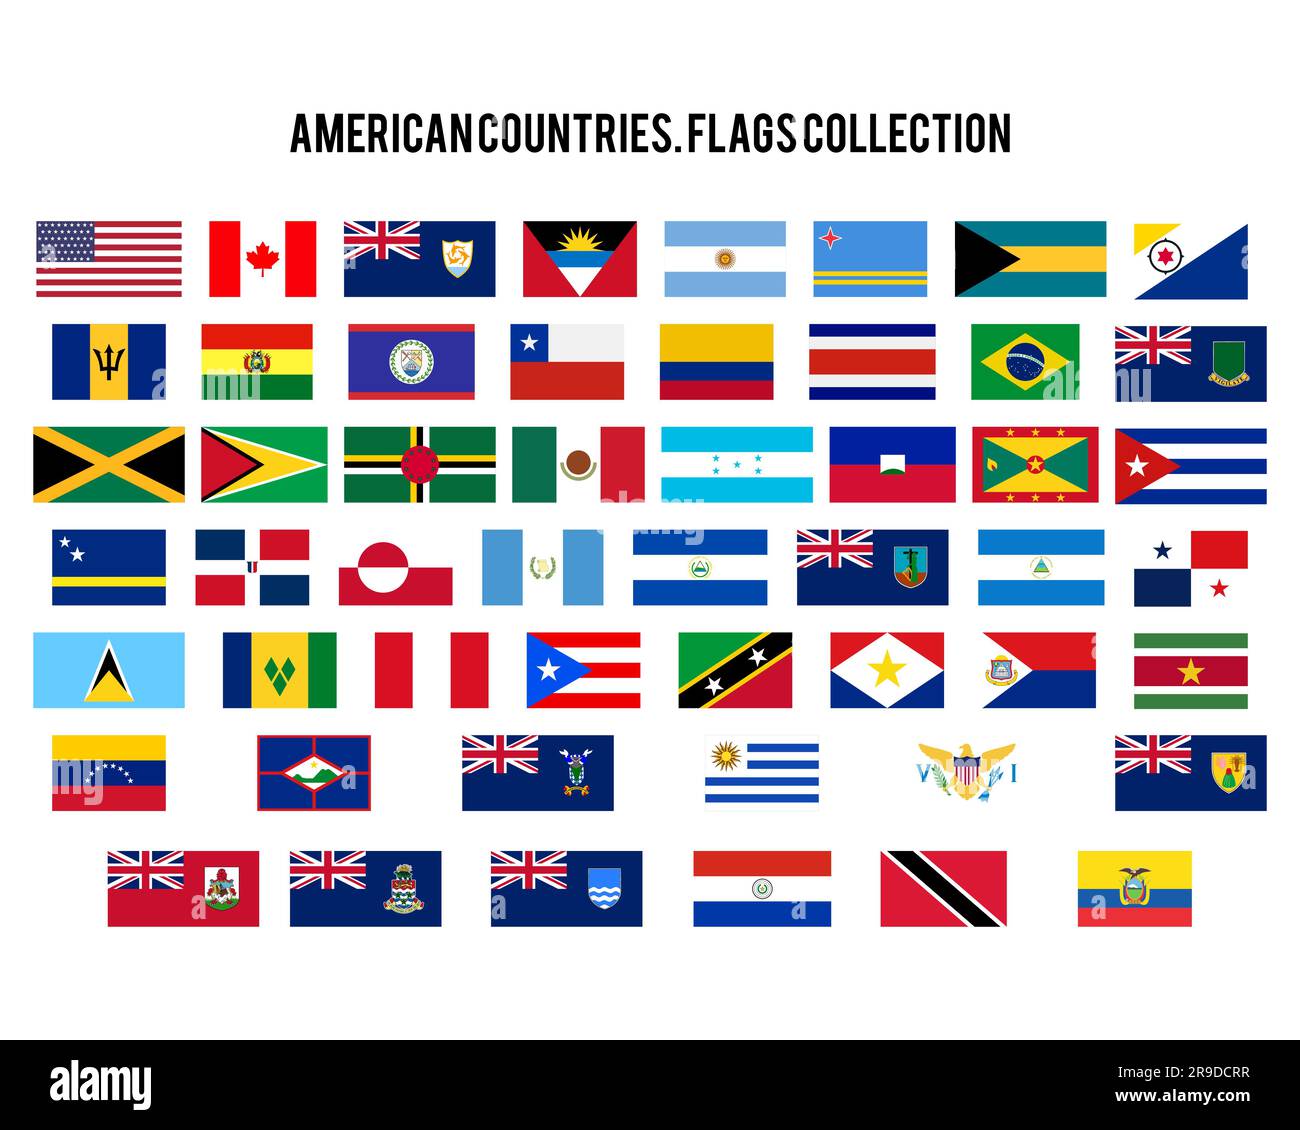 Ensemble d'icônes drapeau Amériques. Etats-Unis pays Original Flags - Etats-Unis, Canada, Argentine et autres. Elément graphique vectoriel de stock. 52 symboles Illustration de Vecteur